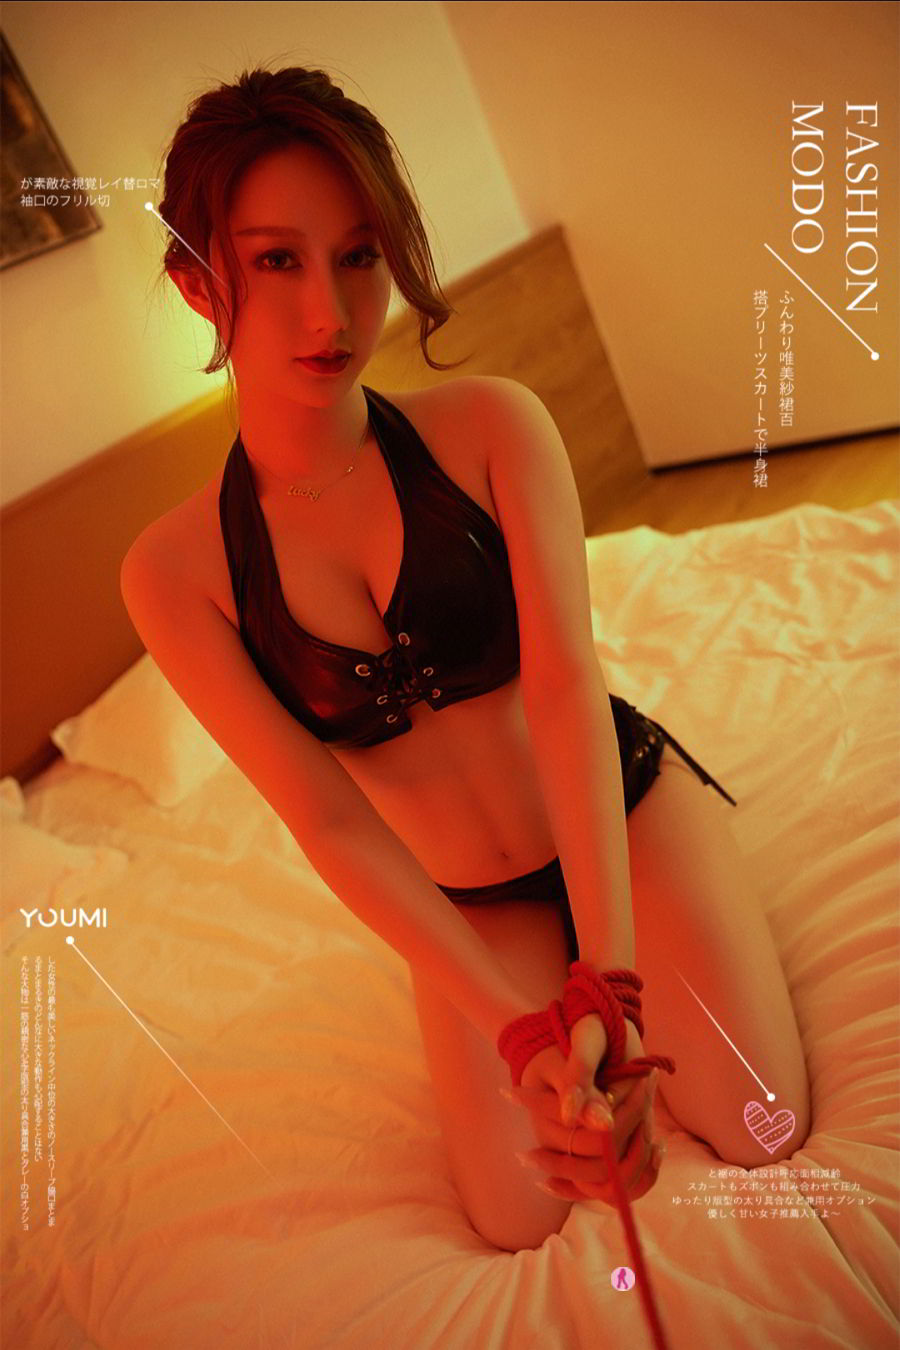 Youmei Vol. 405 Binding Lust